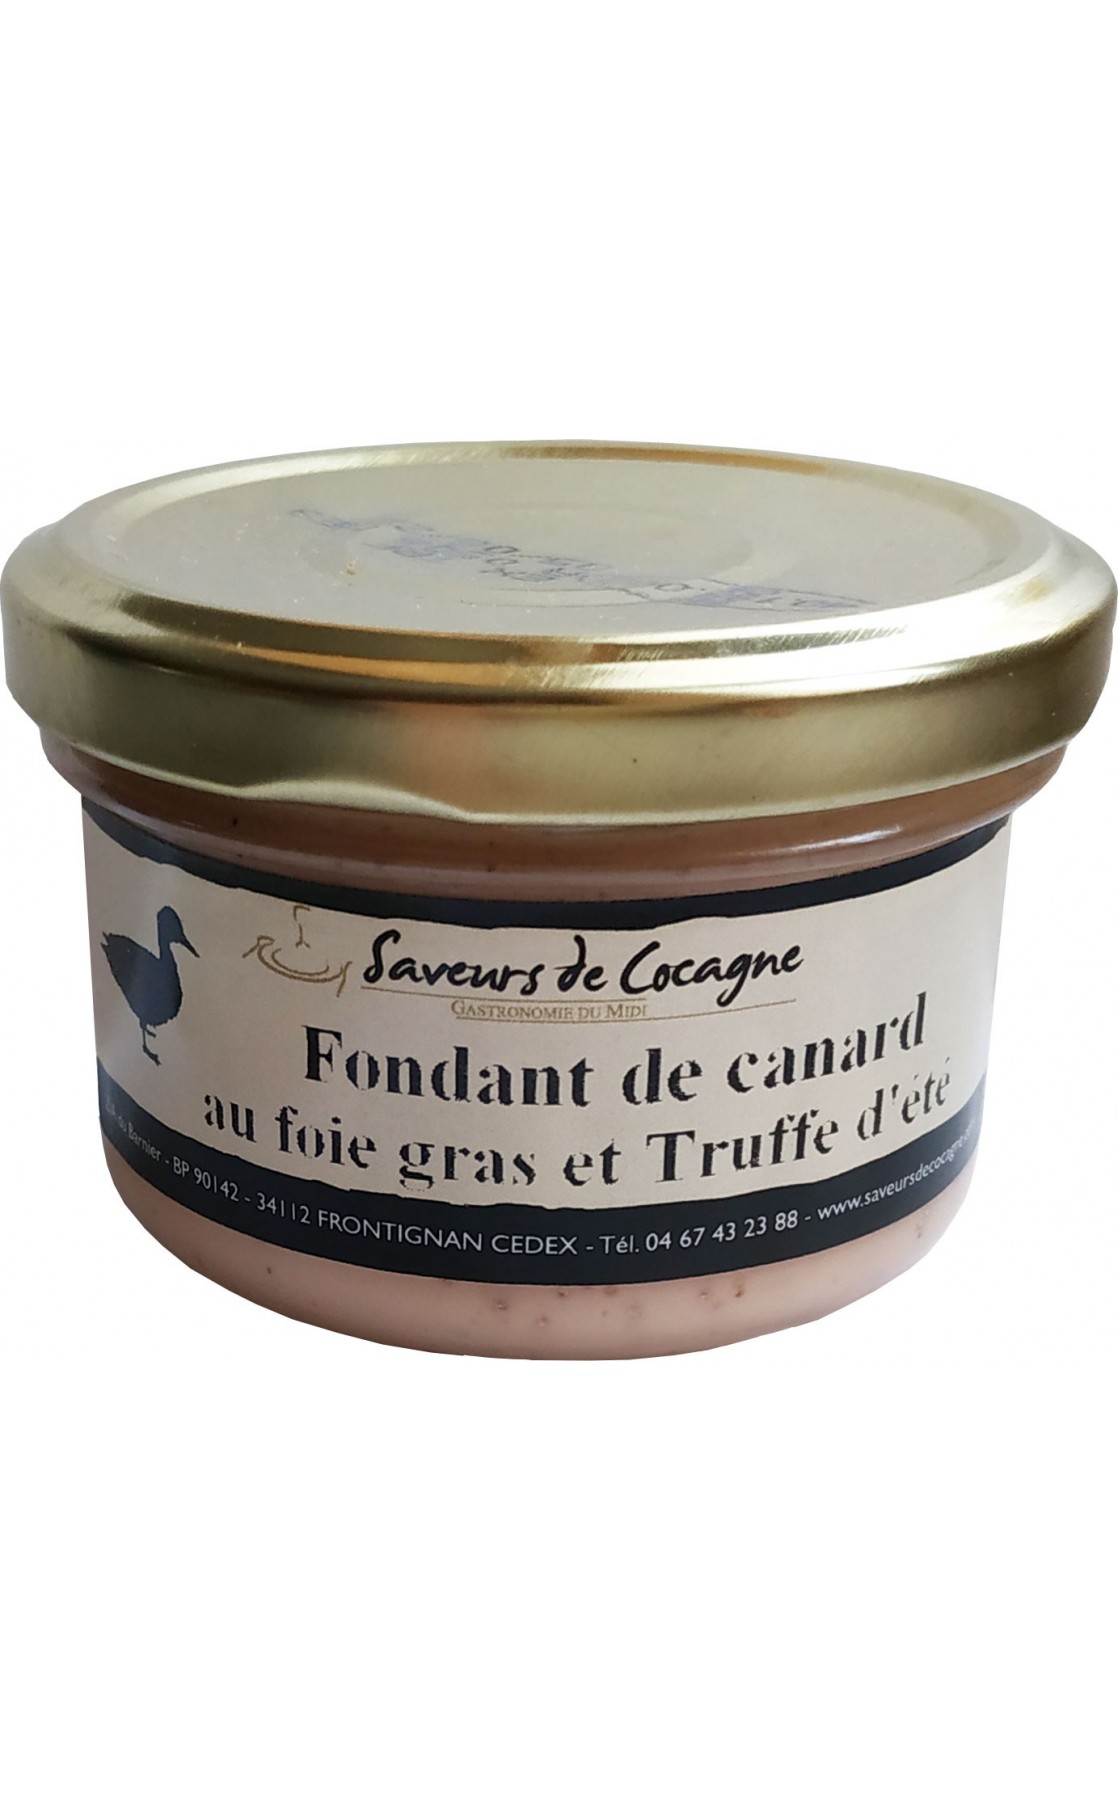 Fondant de canard au foie gras et truffe d'été 80g